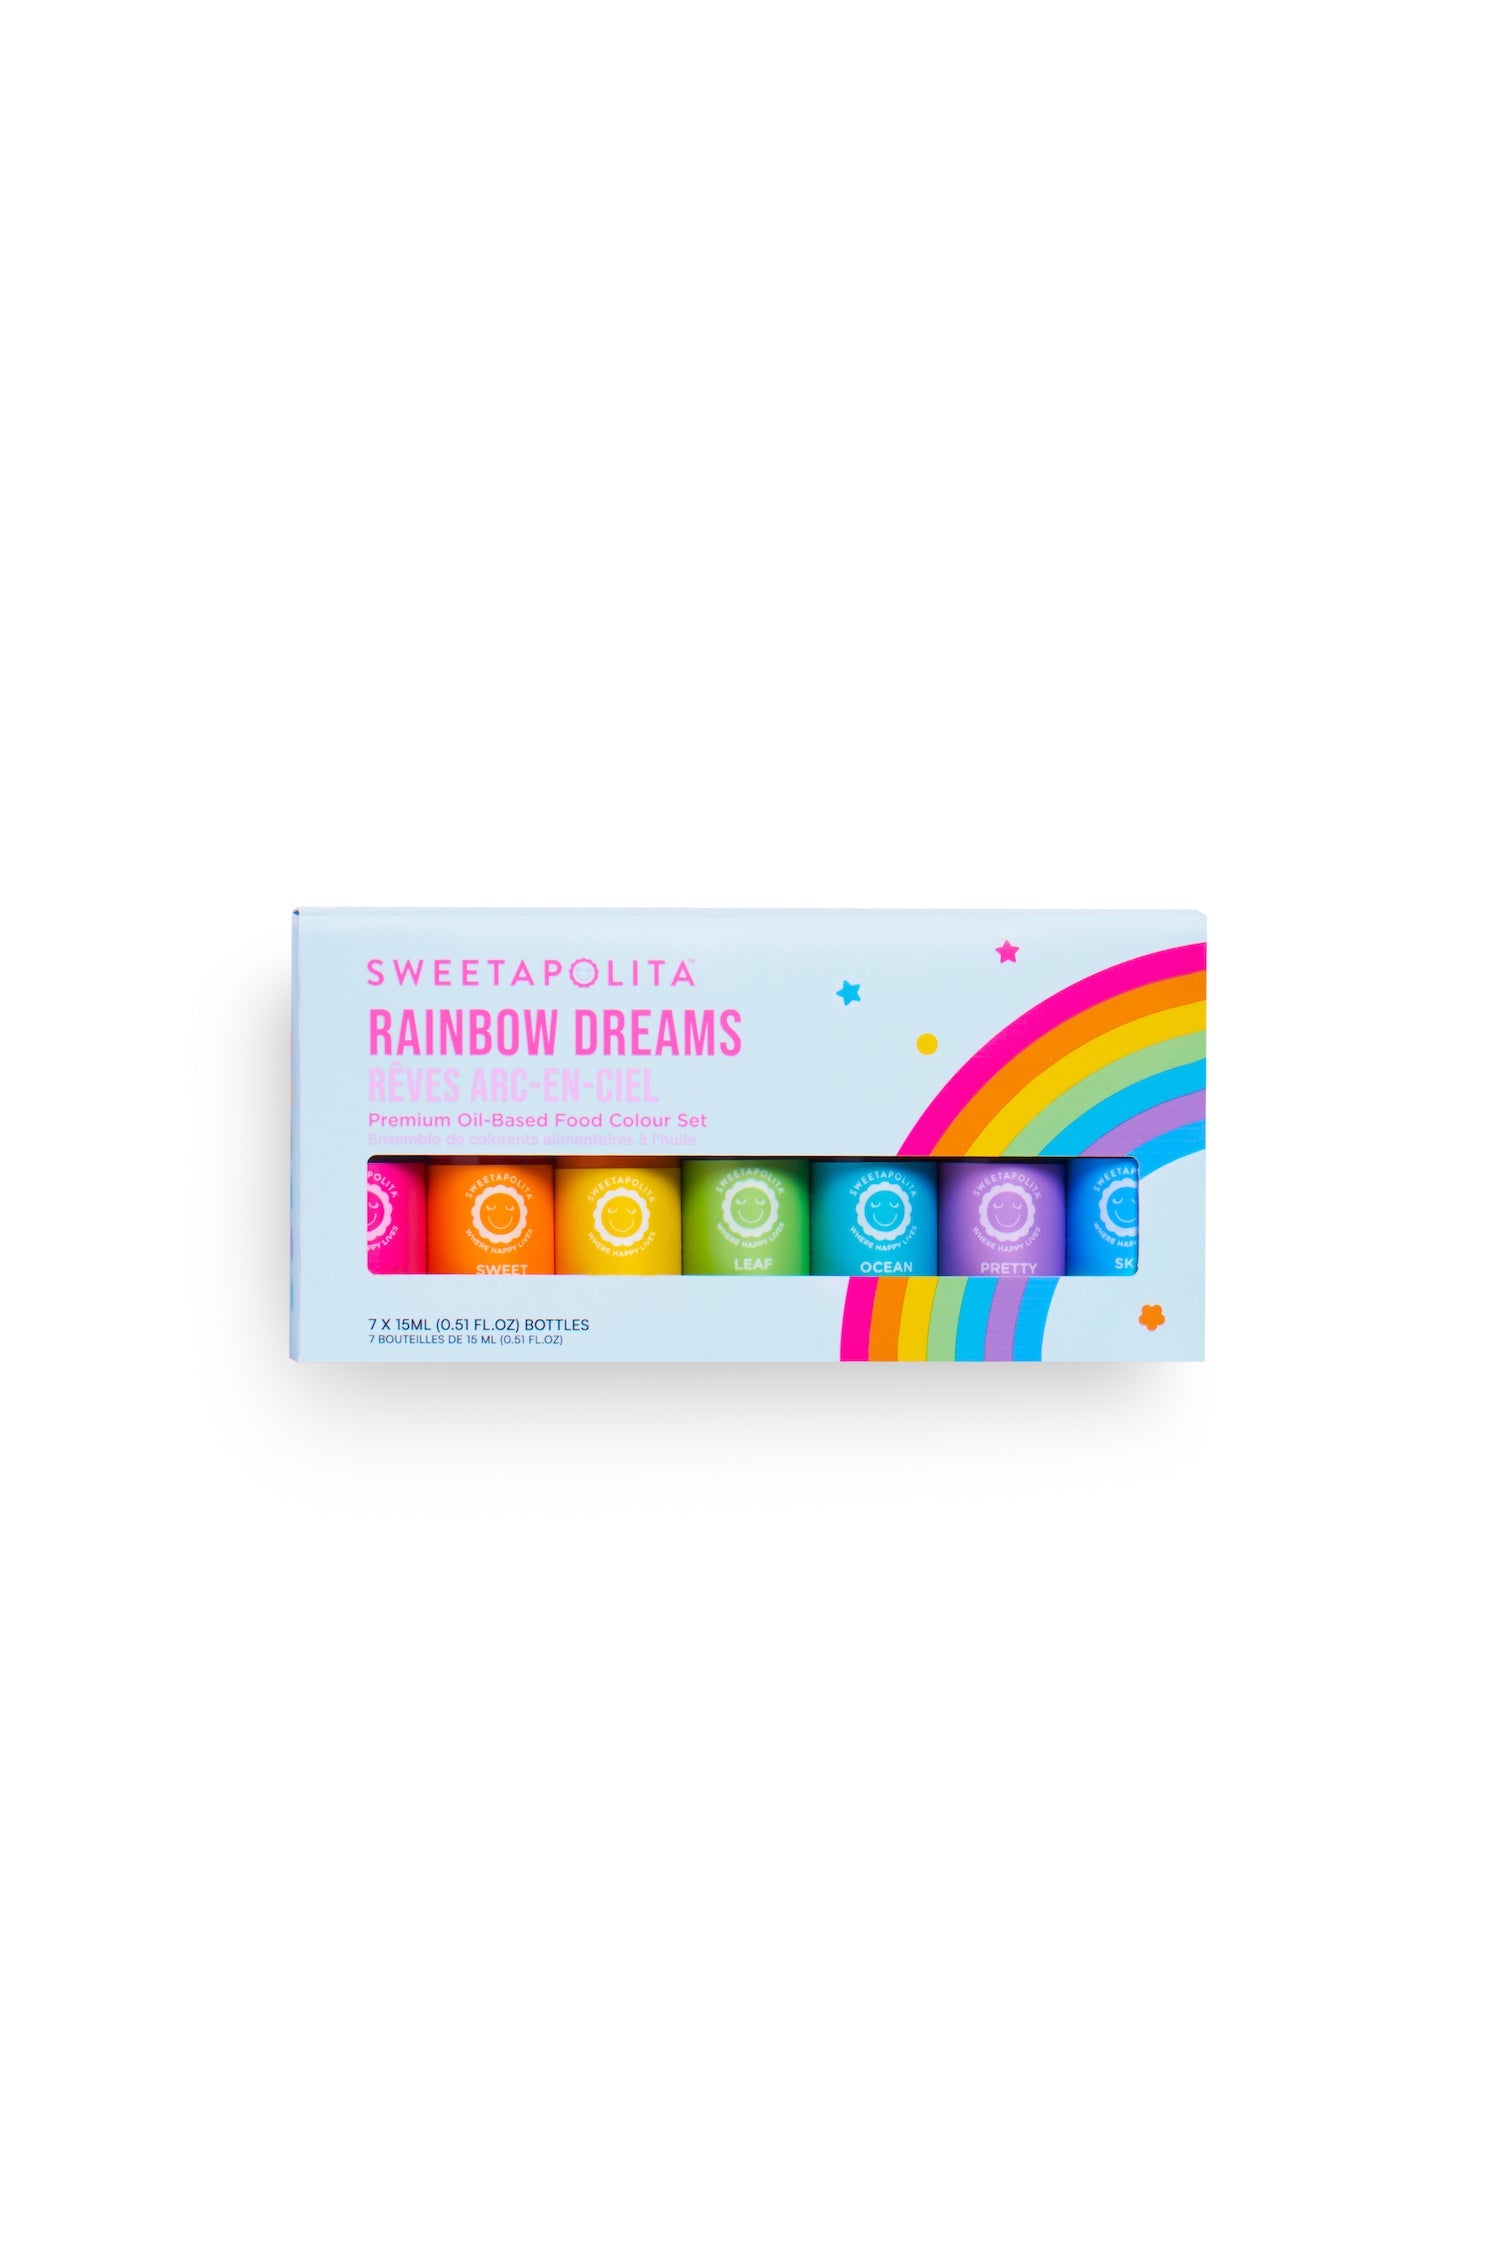 Rainbow Dreams Oil Based Food Color Set - US